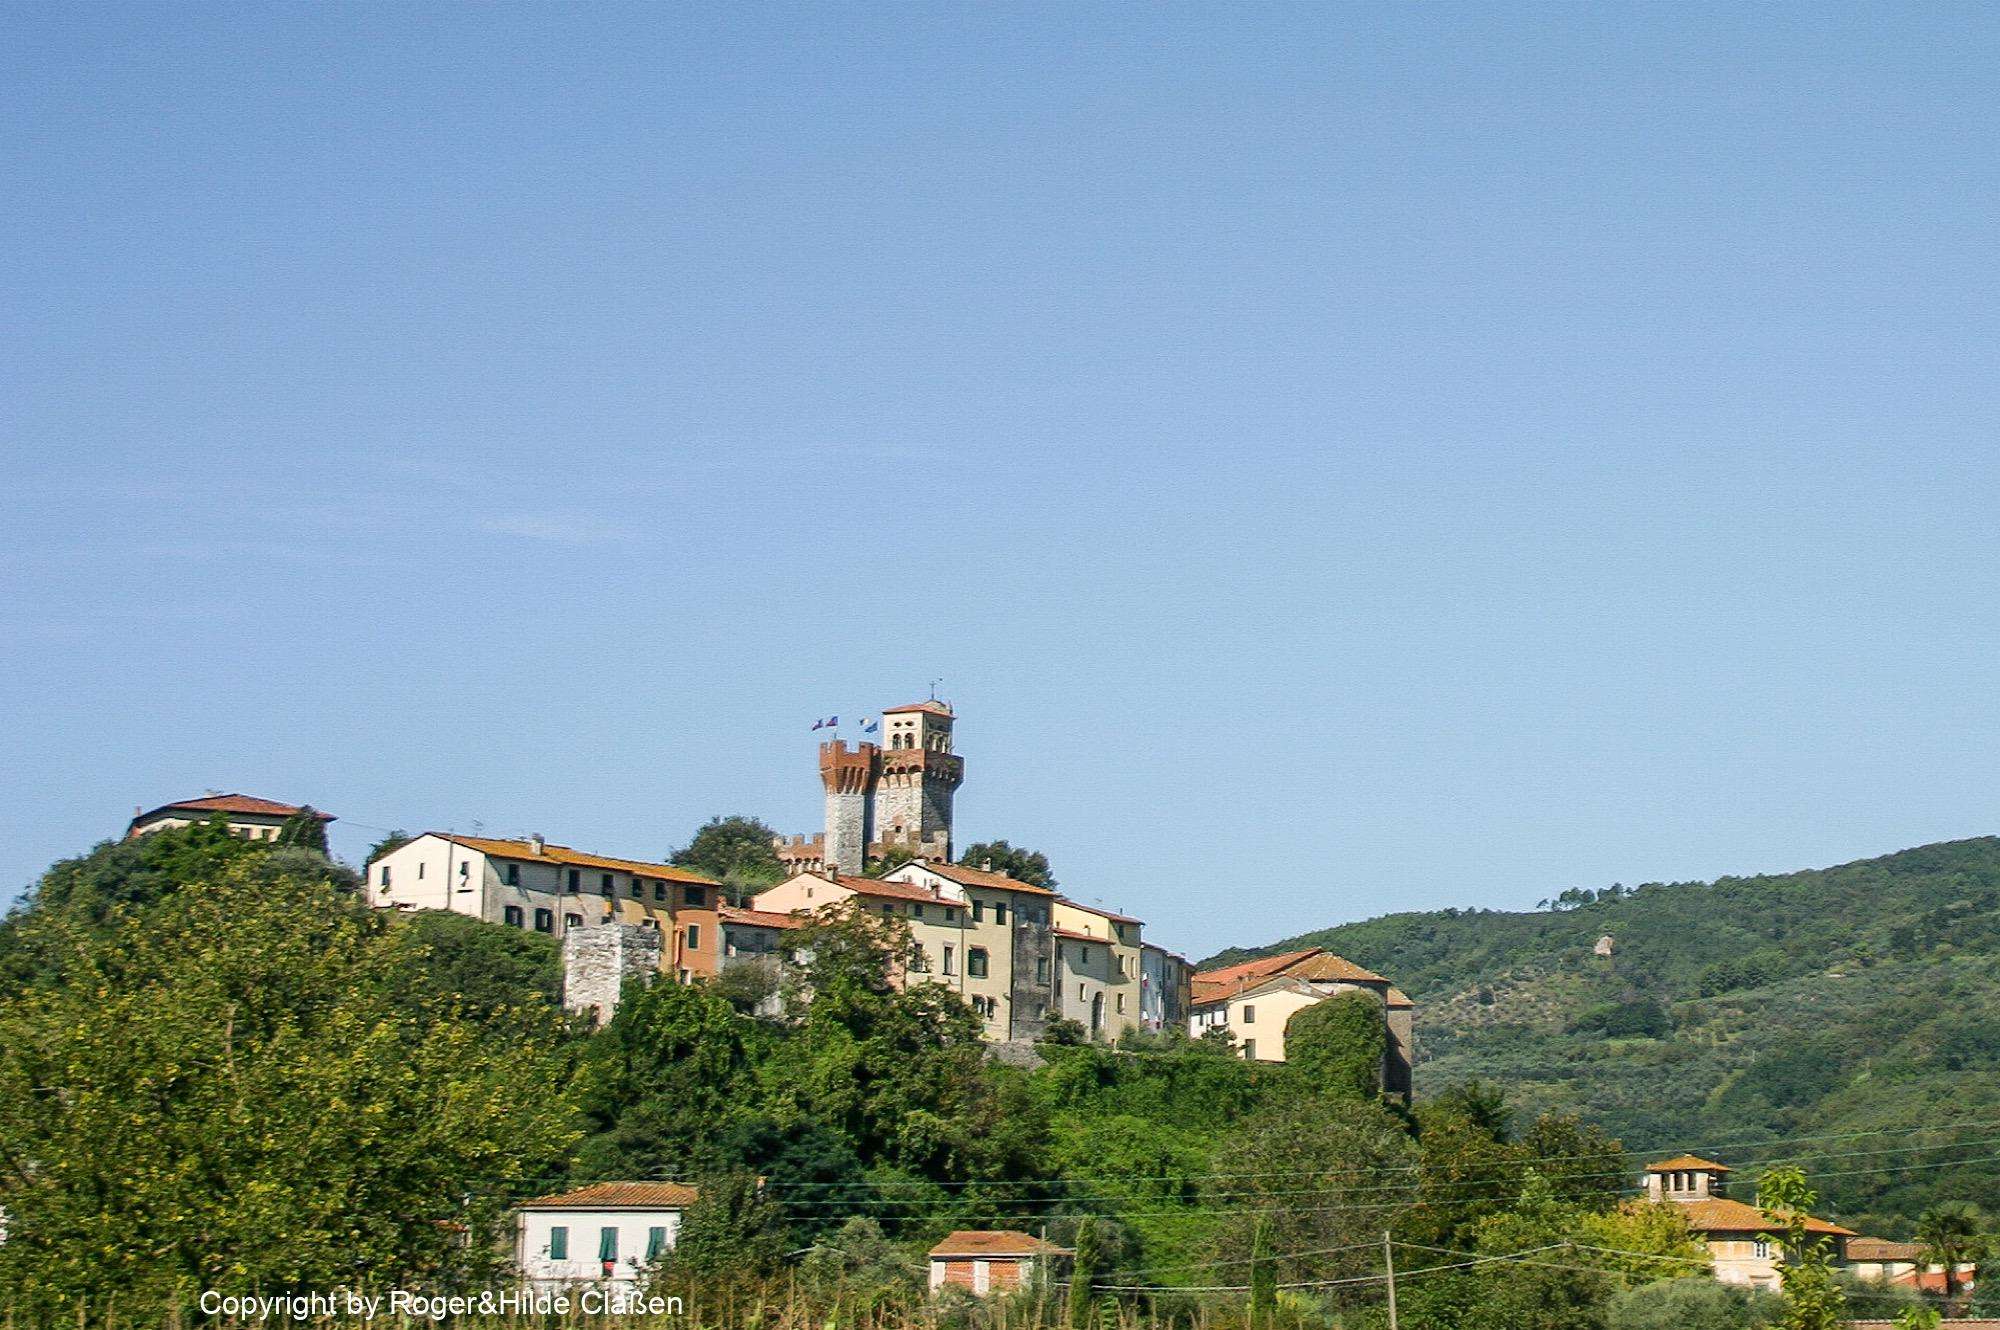 Das historische Dorf Nozzano mit der Burg „Castello Di Nozzano“ am Fluss Serchio kurz vor Lucca